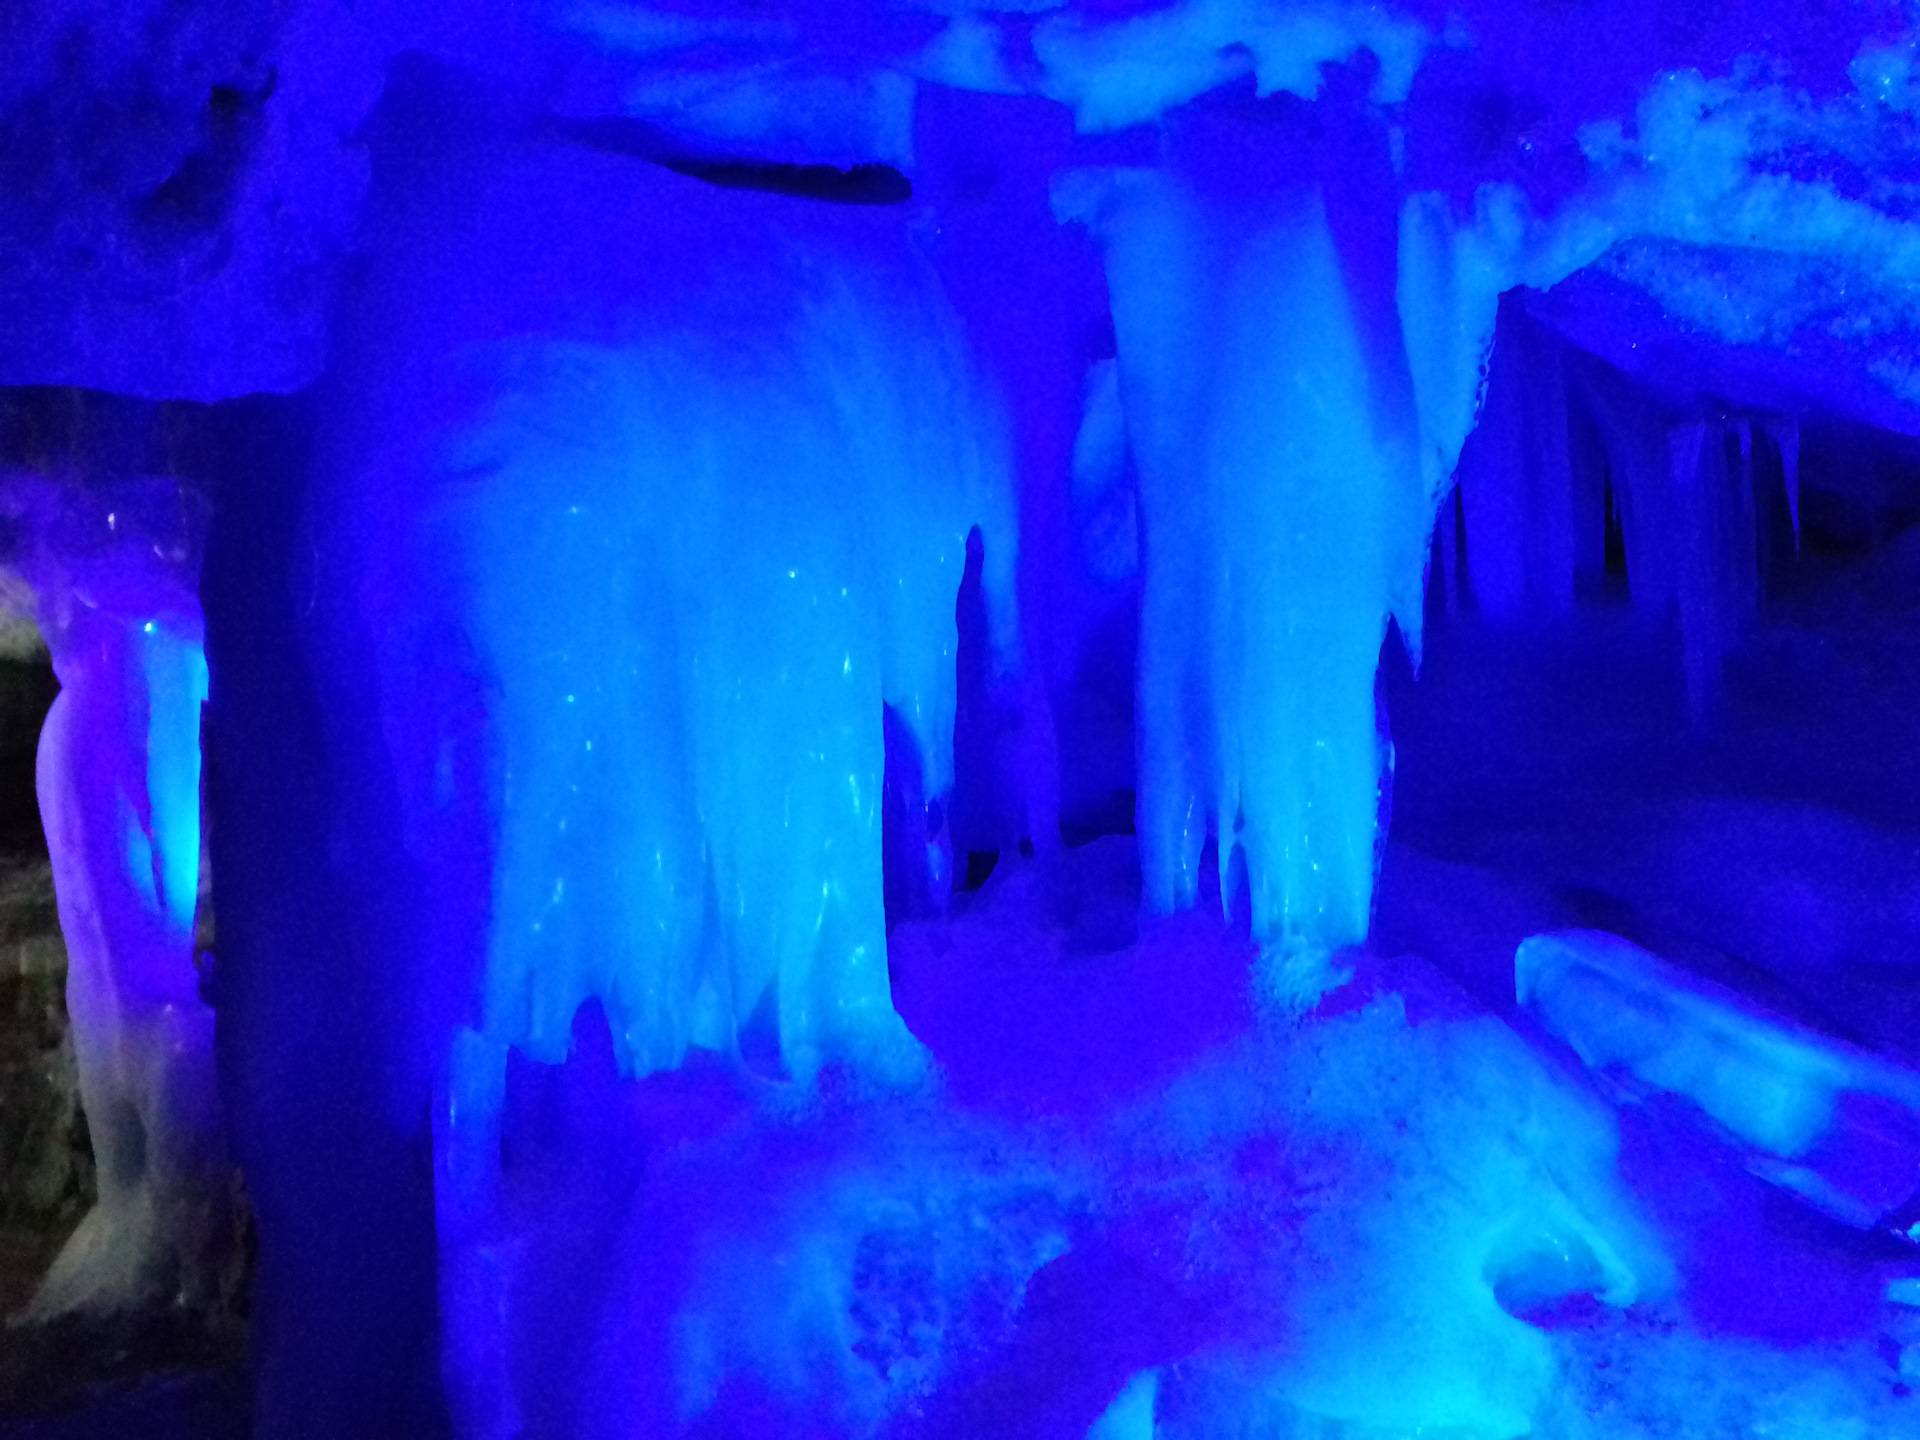 Кунгурская пещера сталактиты и сталагмиты фото